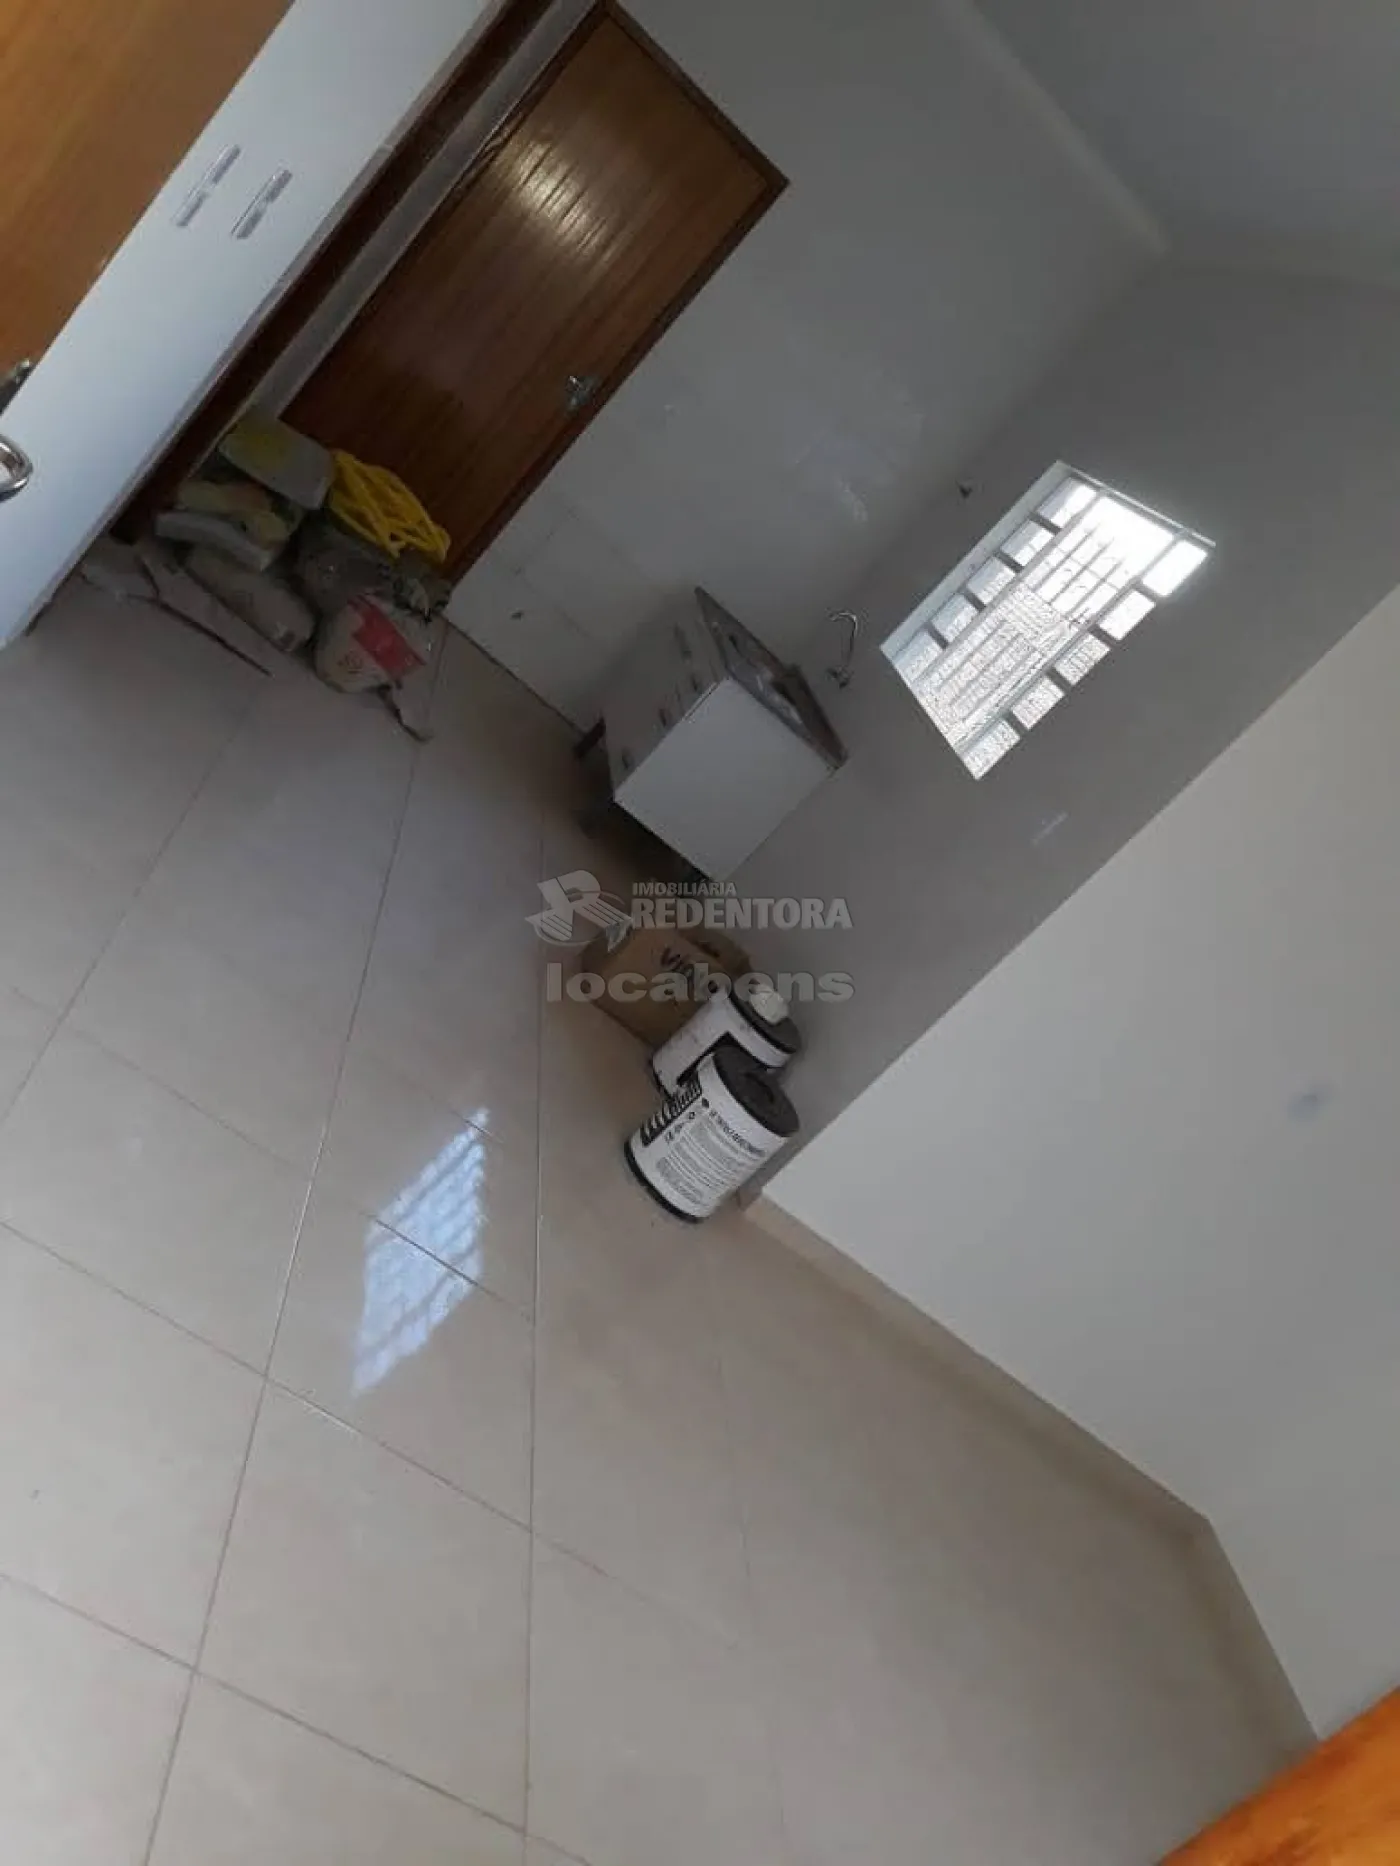 Comprar Casa / Padrão em São José do Rio Preto apenas R$ 255.000,00 - Foto 5